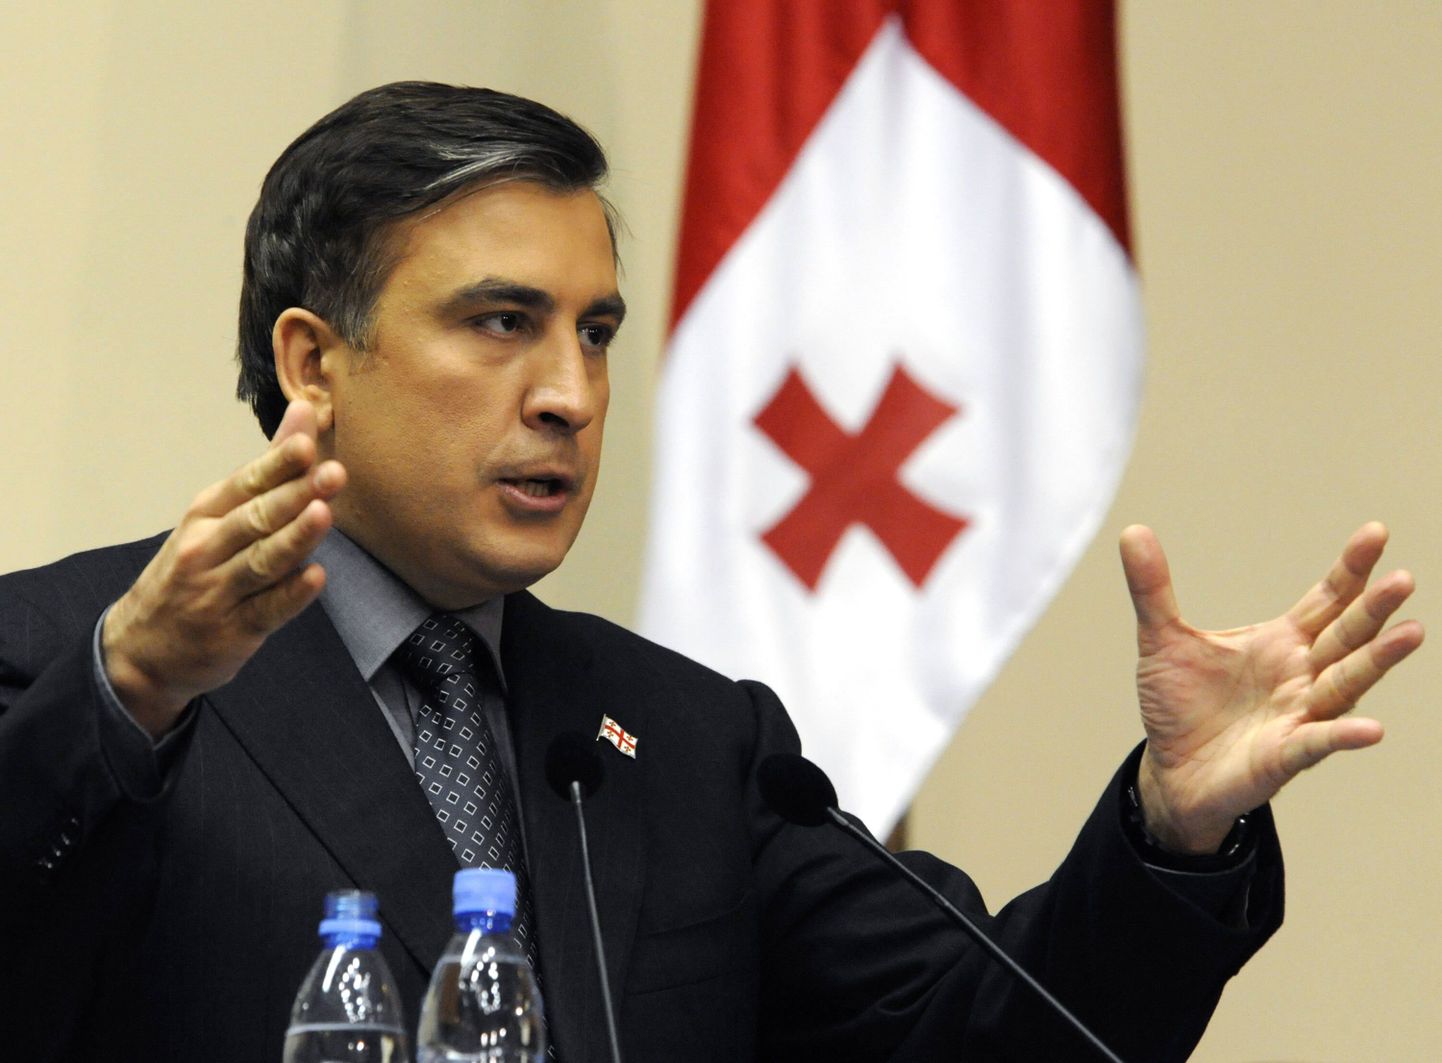 Gruusia opositsioonierakonnad plaanivad 9. aprilliks suurmeeleavaldust, kus kavatsetakse nõuda president Mihheil Saakašvili tagasiastumist.